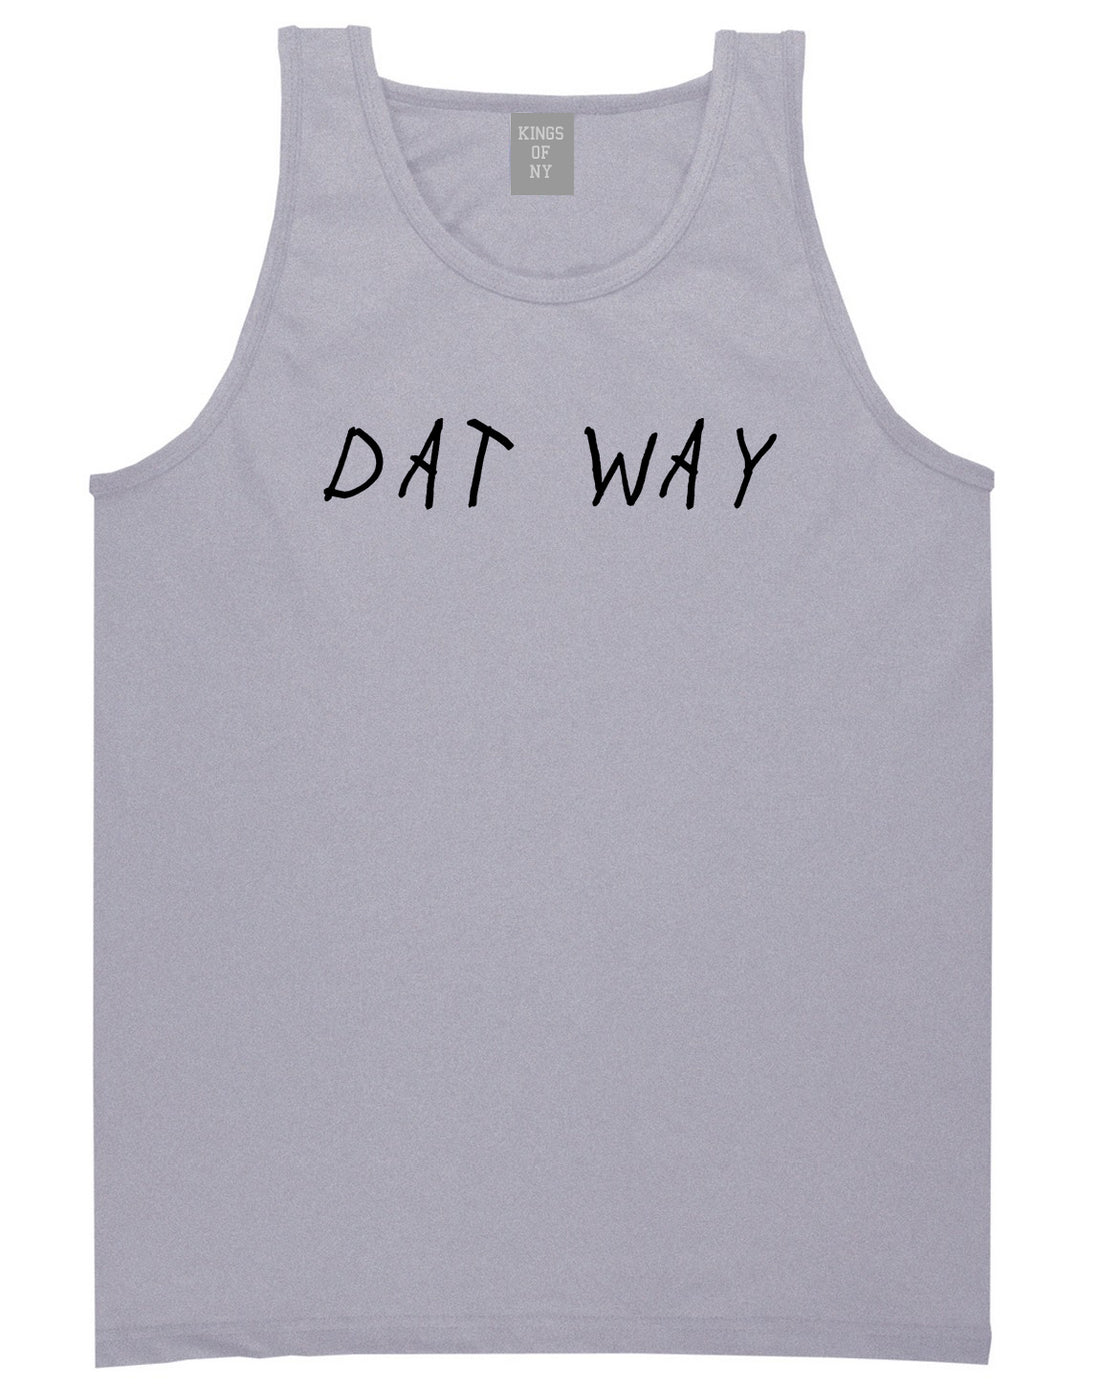 Dat_Way_Font Mens Grey Tank Top Shirt by Kings Of NY